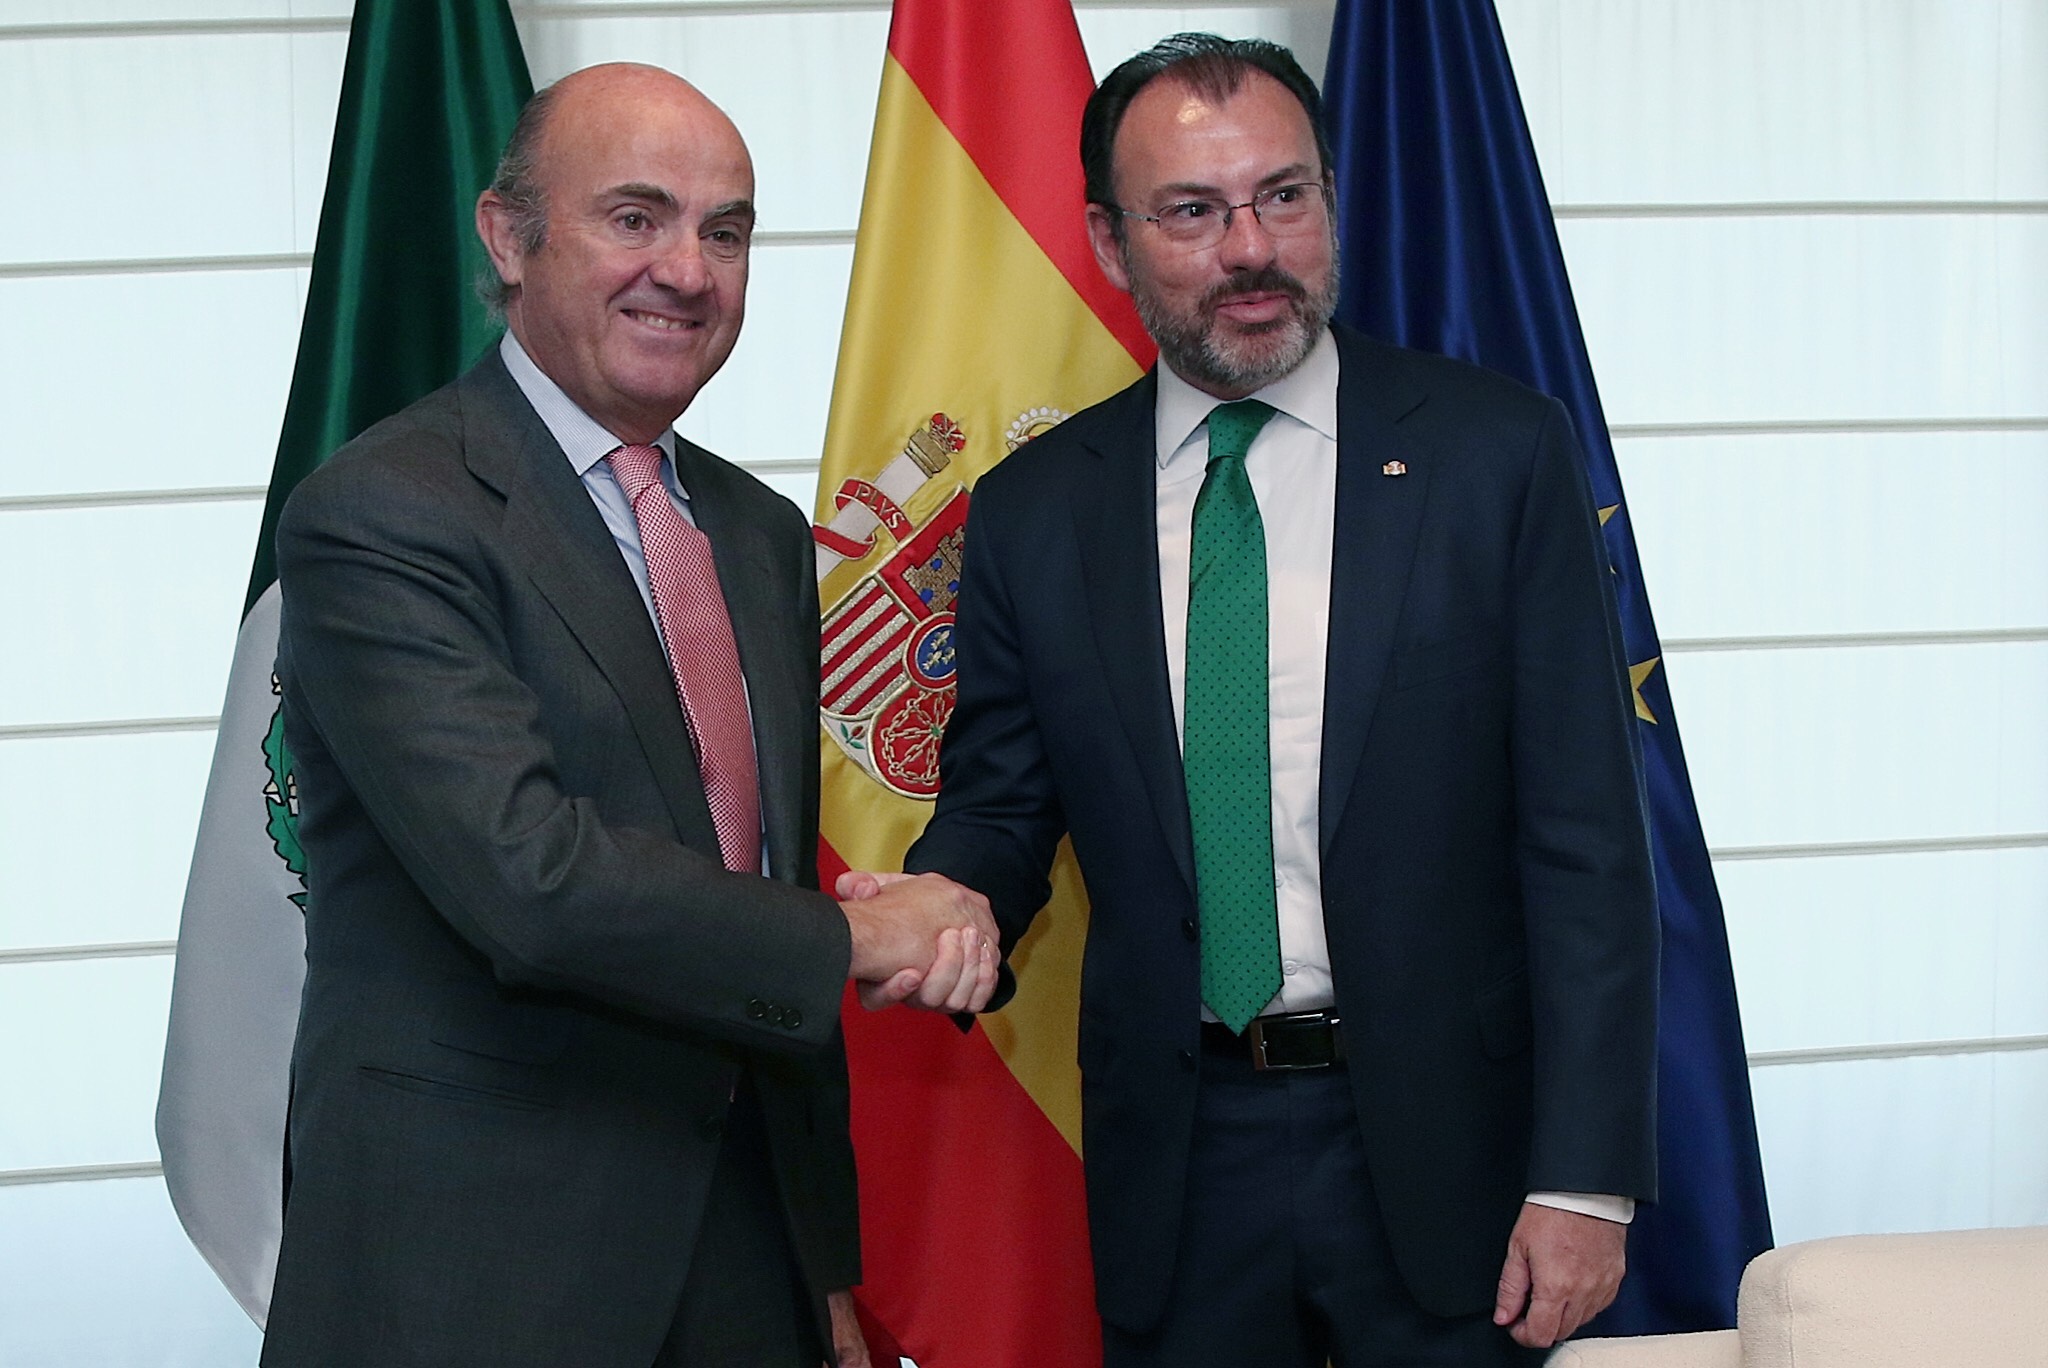 Canciller Luis Videgaray, estrechando la mano del Ministro de Economía español, Luis de Guindos.